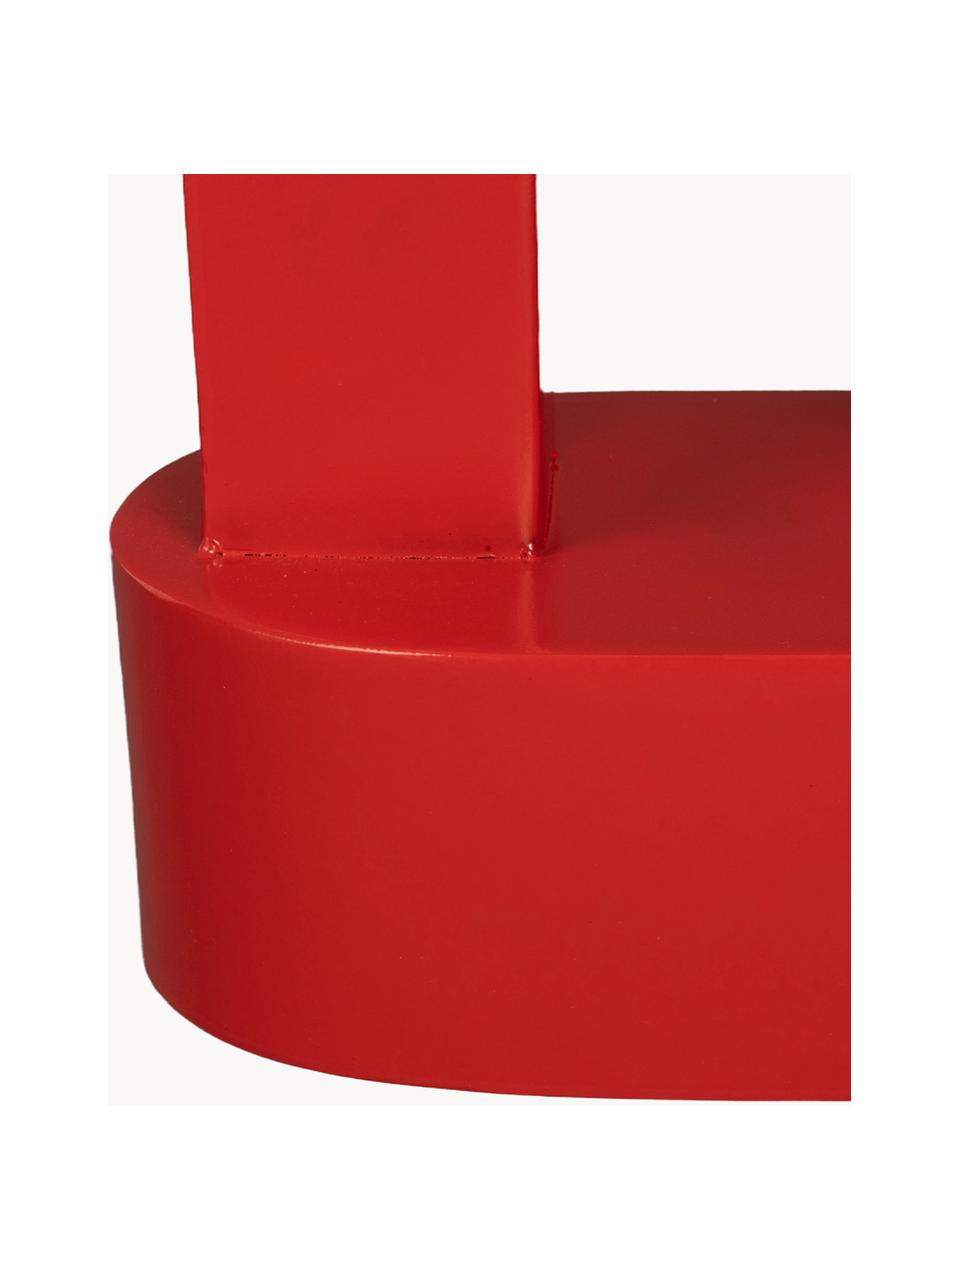 Ovaler Metall-Beistelltisch Magenta, Metall, beschichtet, Rot, B 36 x H 47 cm